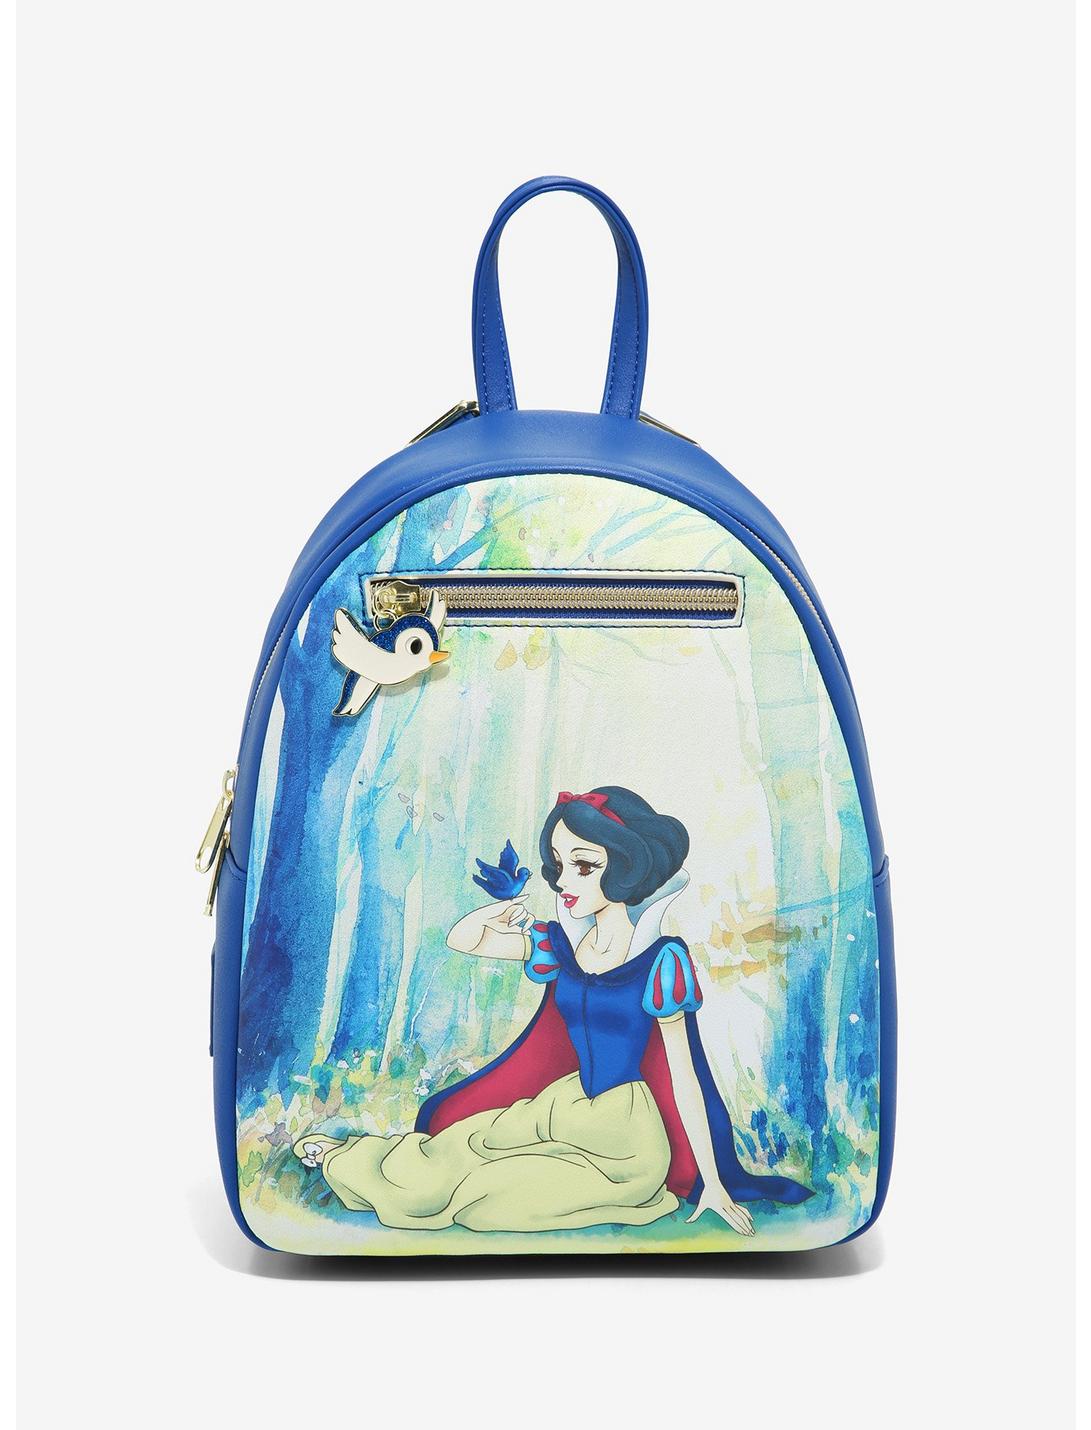 White Dog Childrens Adjustable Backpack Princess Pink Navy Blue Childrens Bag 